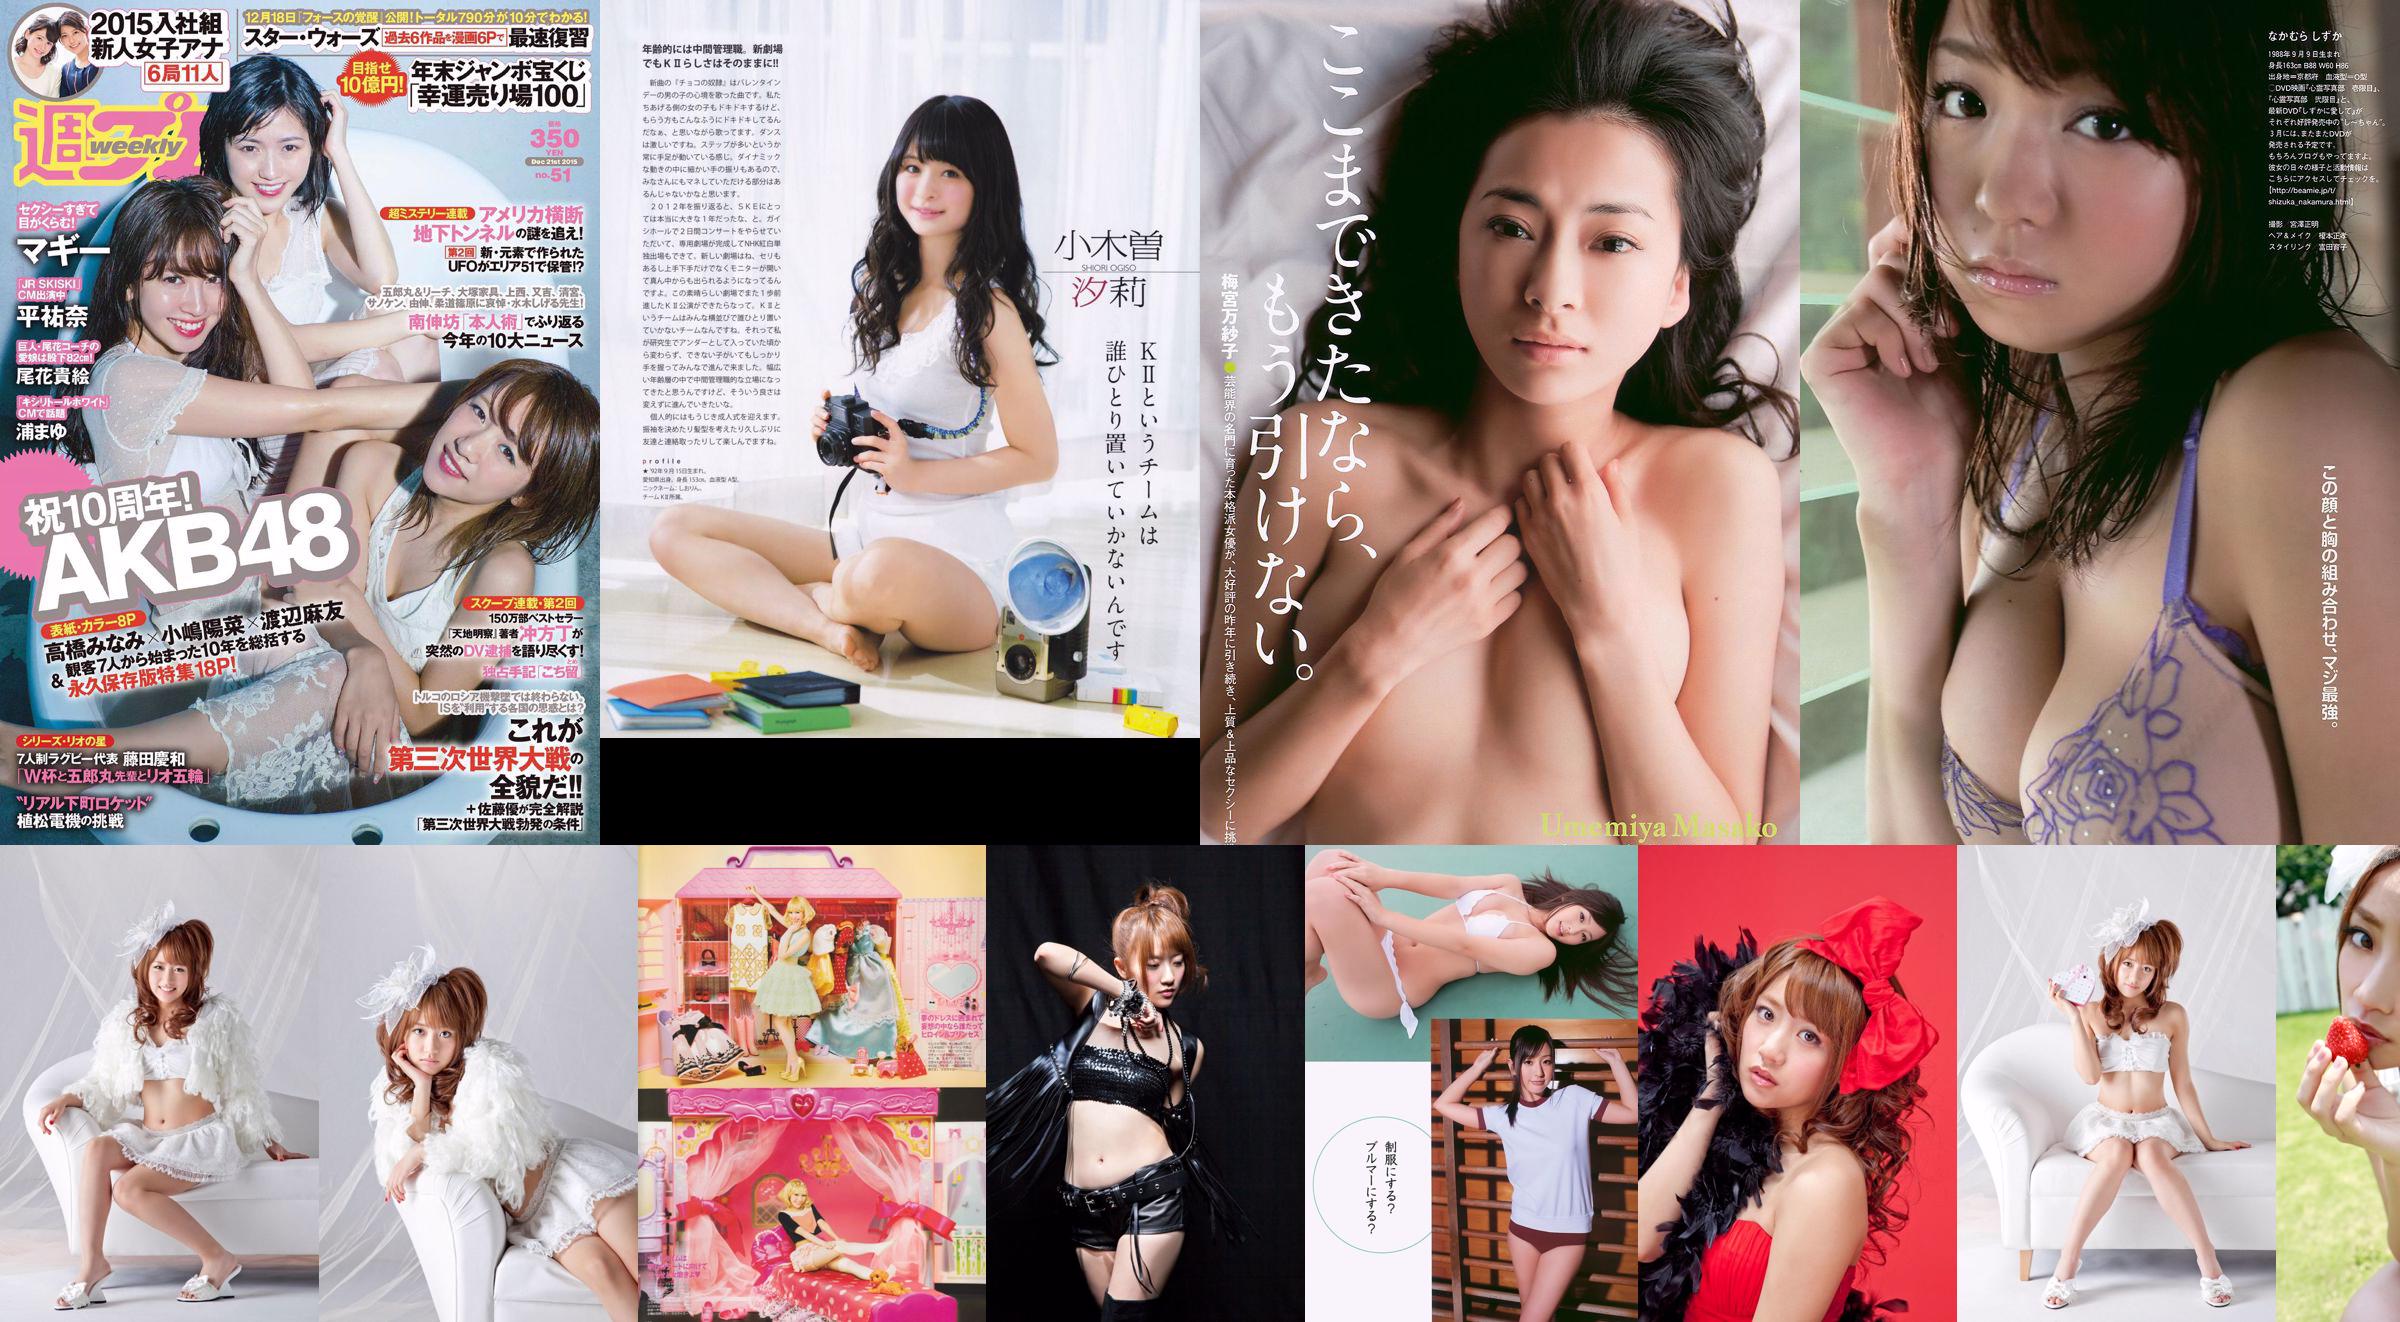 [Bomb Magazine] 2013 No.02 Takahashi Minami Matsui Jurina Kasai Tomomi Kitahara Riehi Photo magazine No.a64a6b Page 6